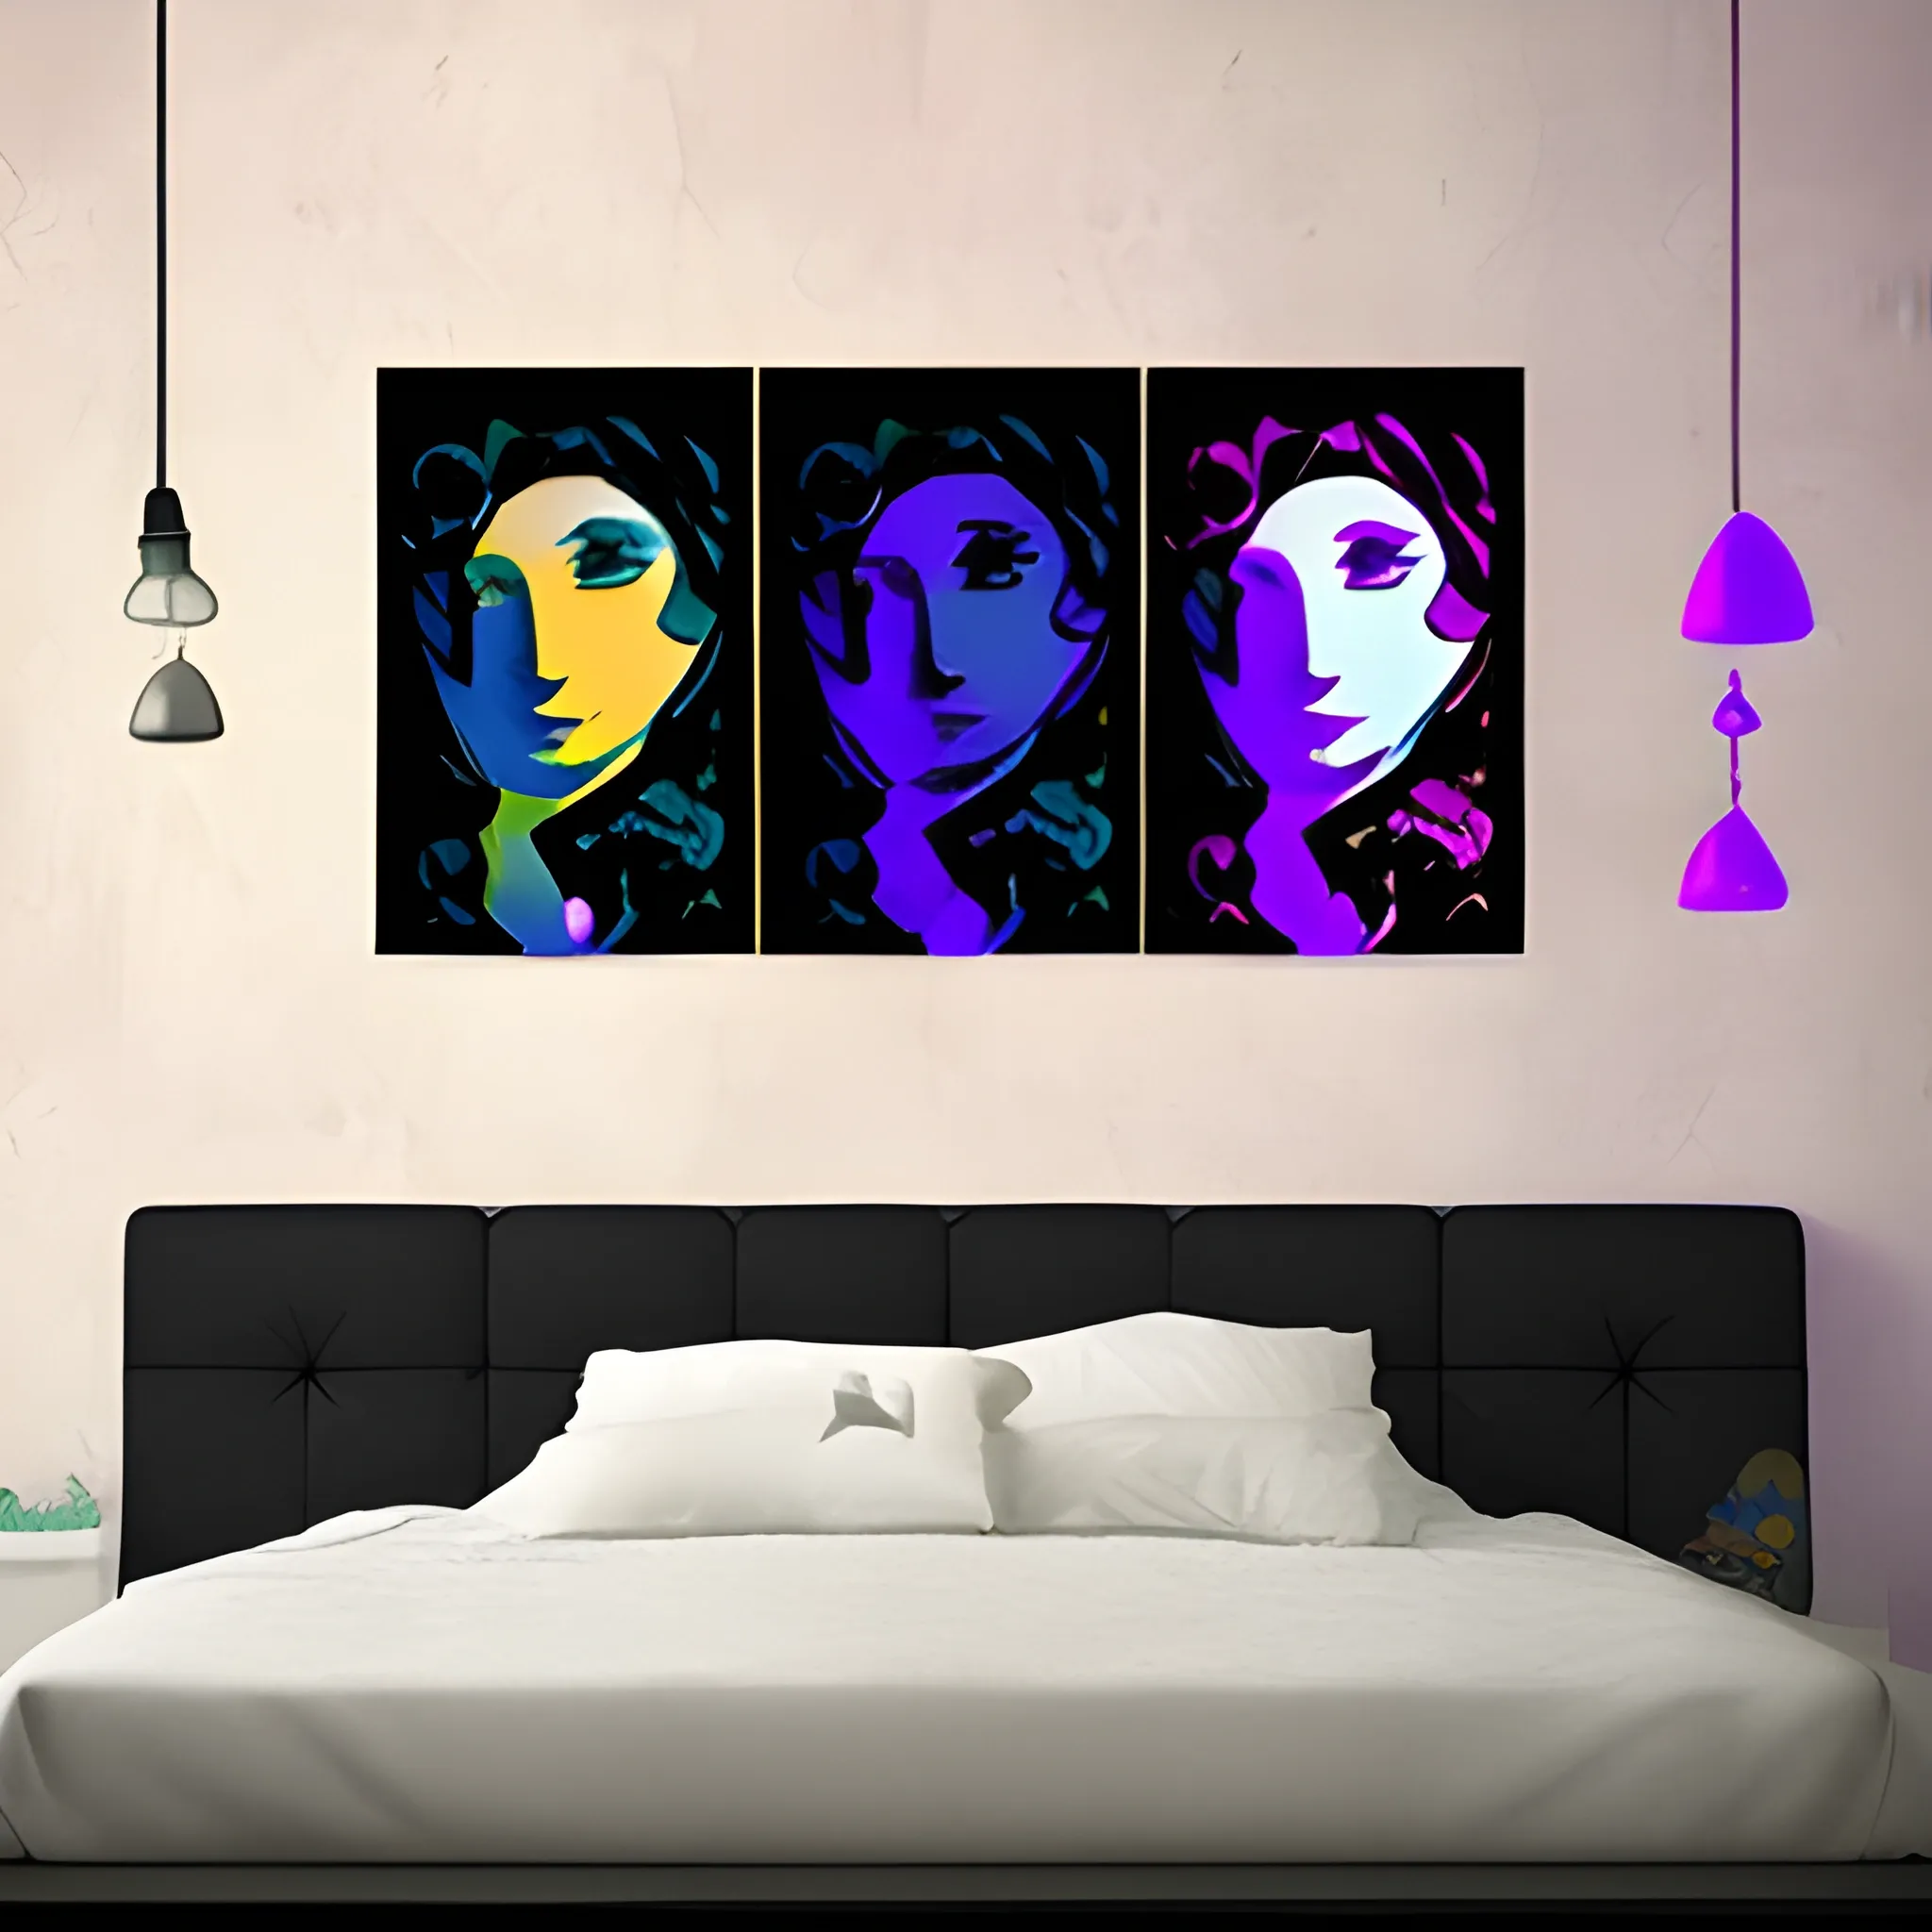 Dreamy Night, Digital Print, Wall Art, AI Art, Home Decor, Pop Art, Wall Decor, Classic Art, Digital Download